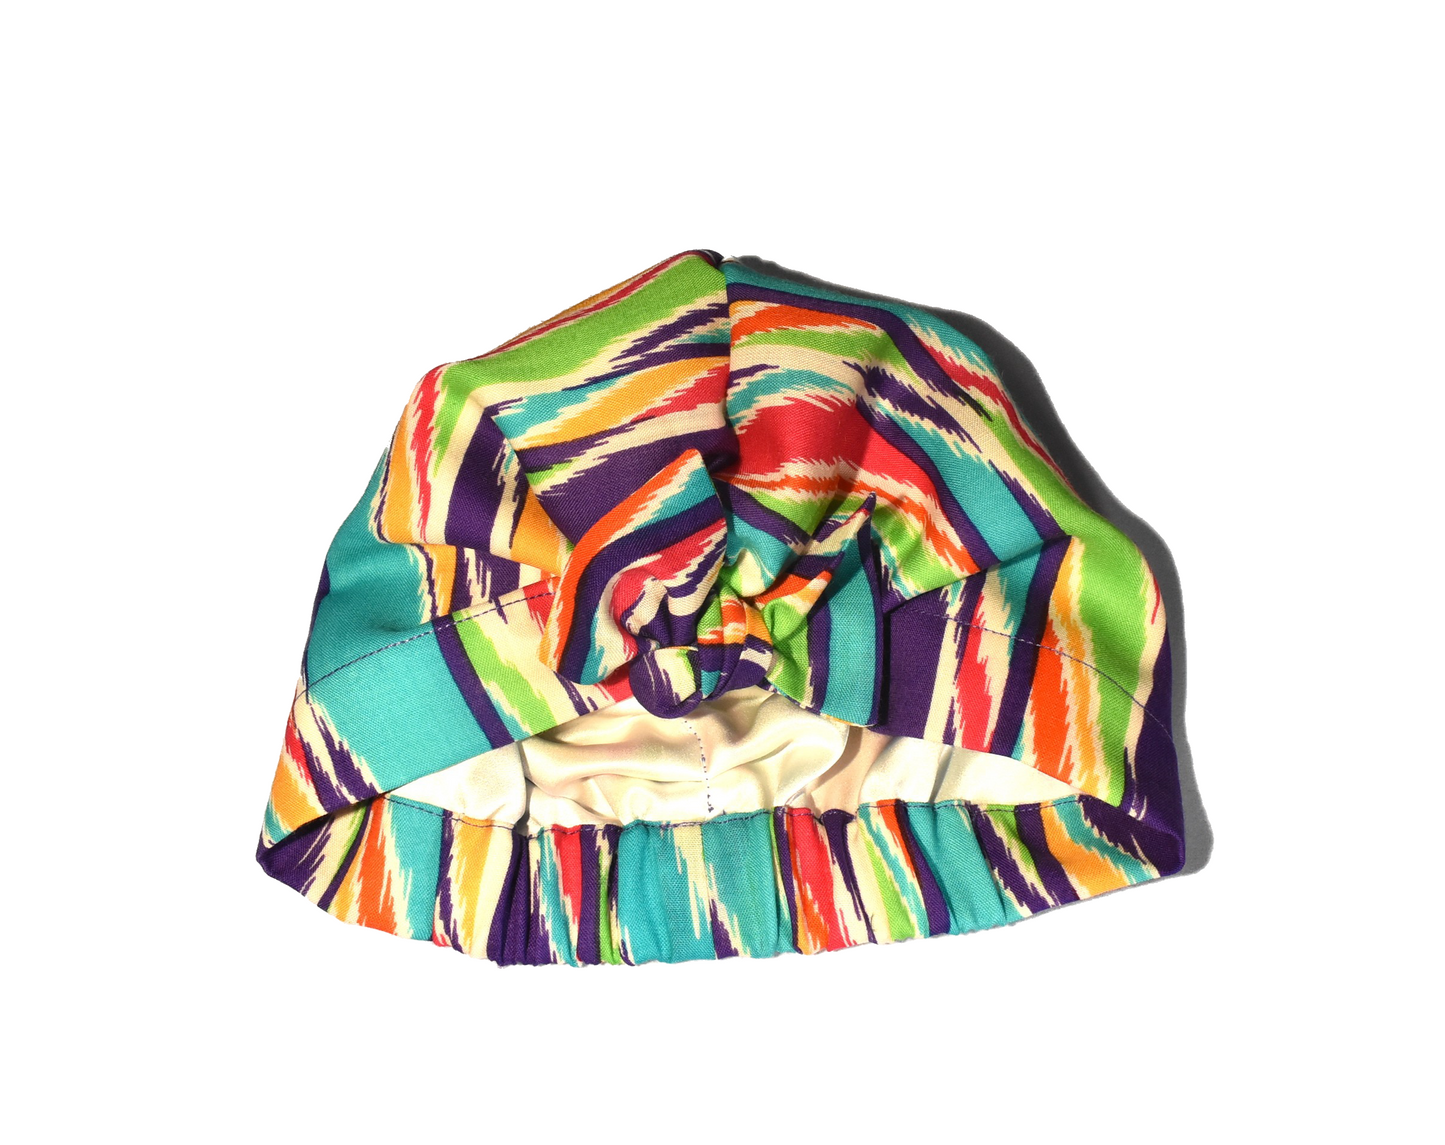 Ladies Turban Hat - Vintage 1970-80s Bright Ikat Print in Liberty of London printed - Varuna wool